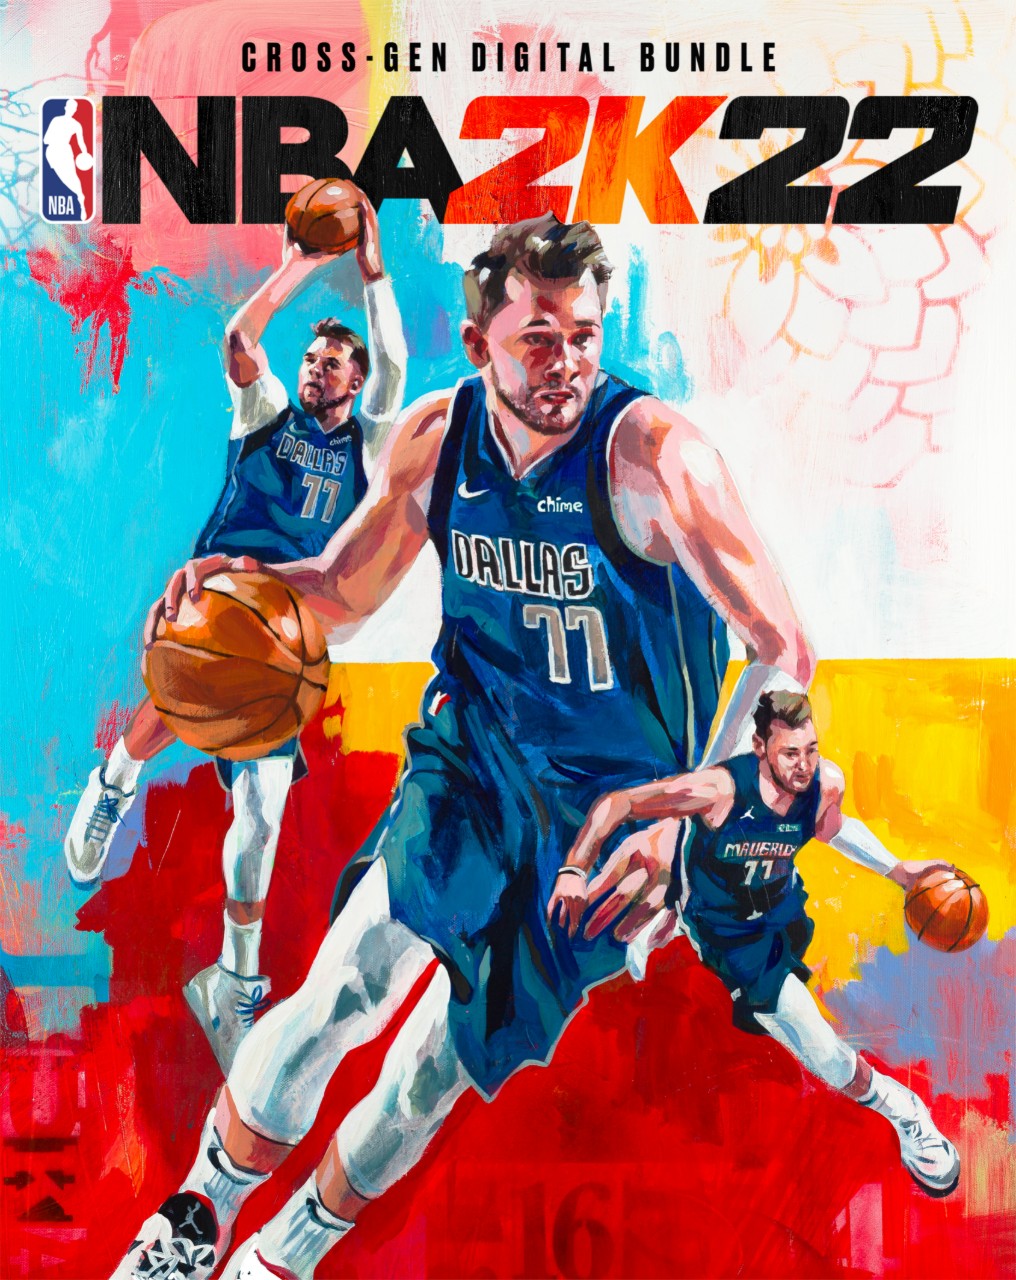 NBA2K22 - Cross-Gen Digital Bundle - Luka - Cover Key Art